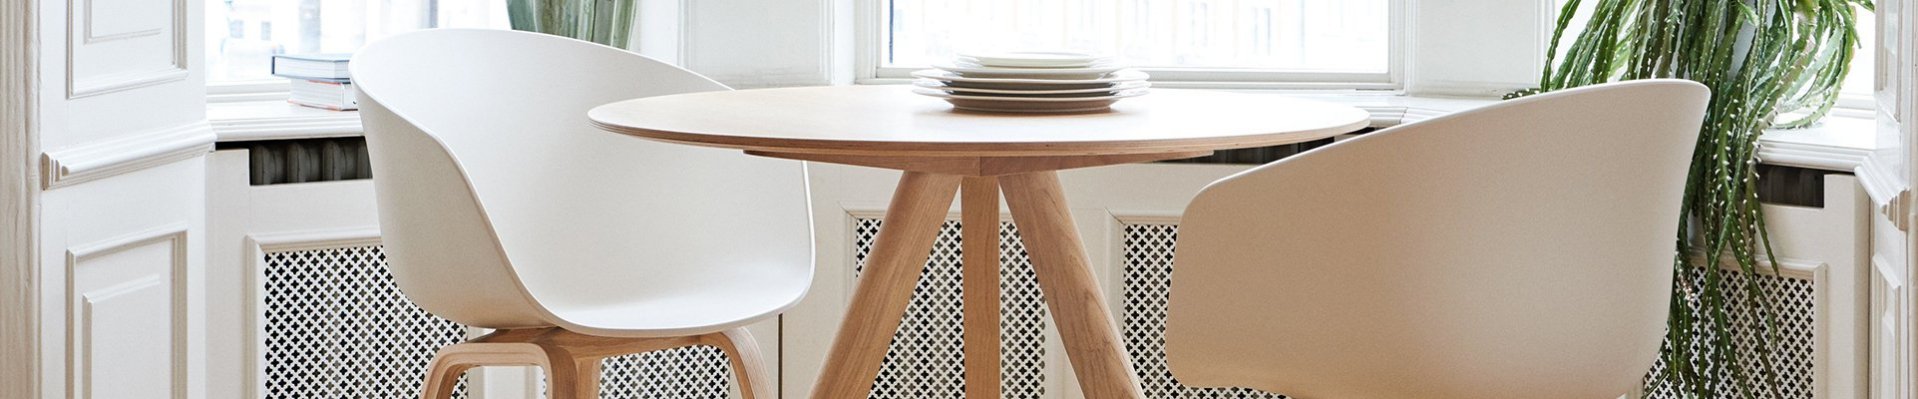 Design stoelen | Design stoel kopen? | Flinders